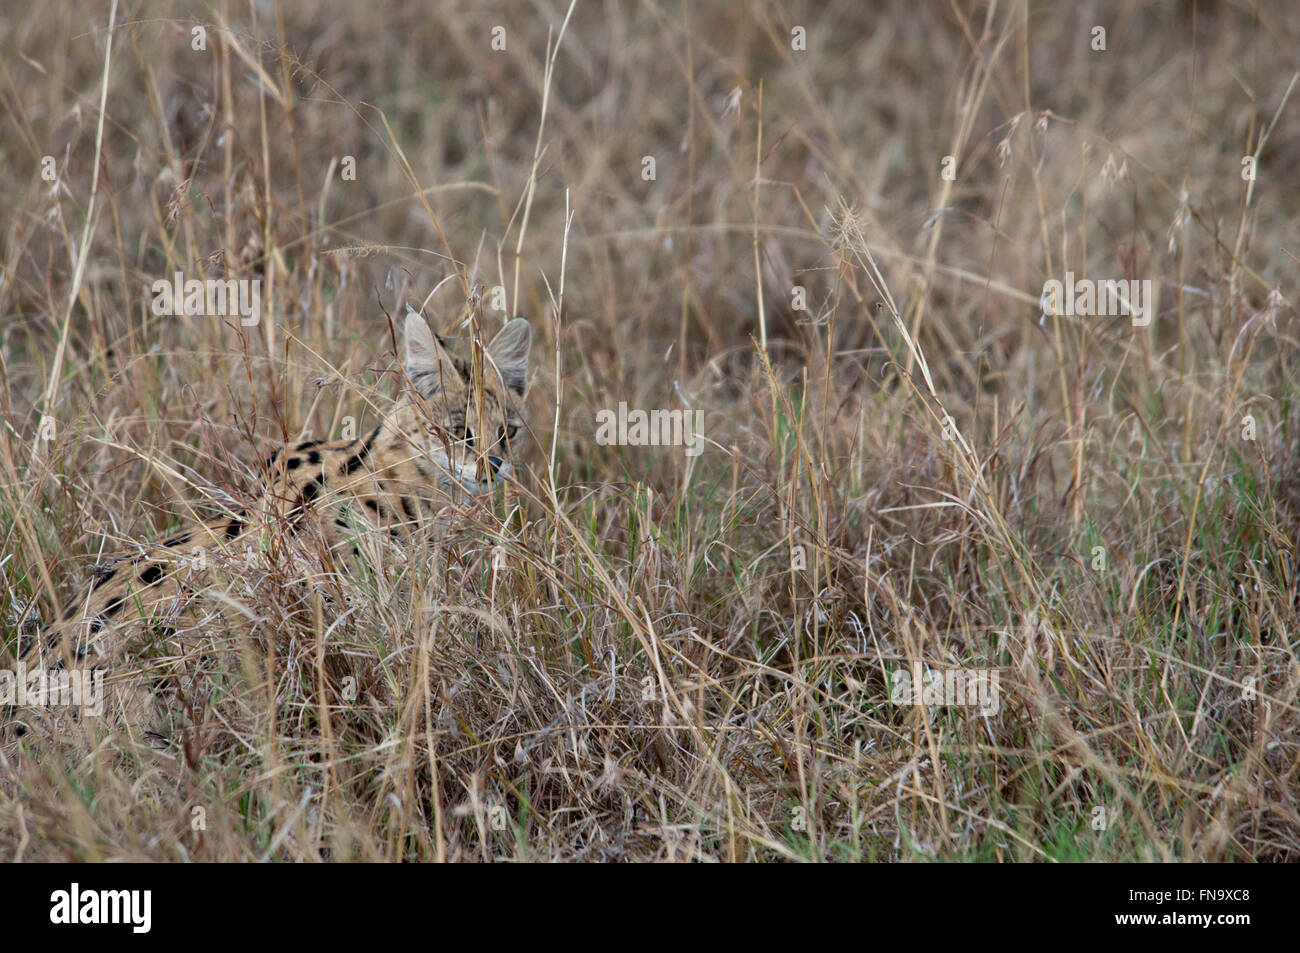 Leptailurus serval solitaires, Chat serval, caché dans l'herbe sèche dans le Masai Mara National Reserve, Kenya, Afrique de l'Est Banque D'Images